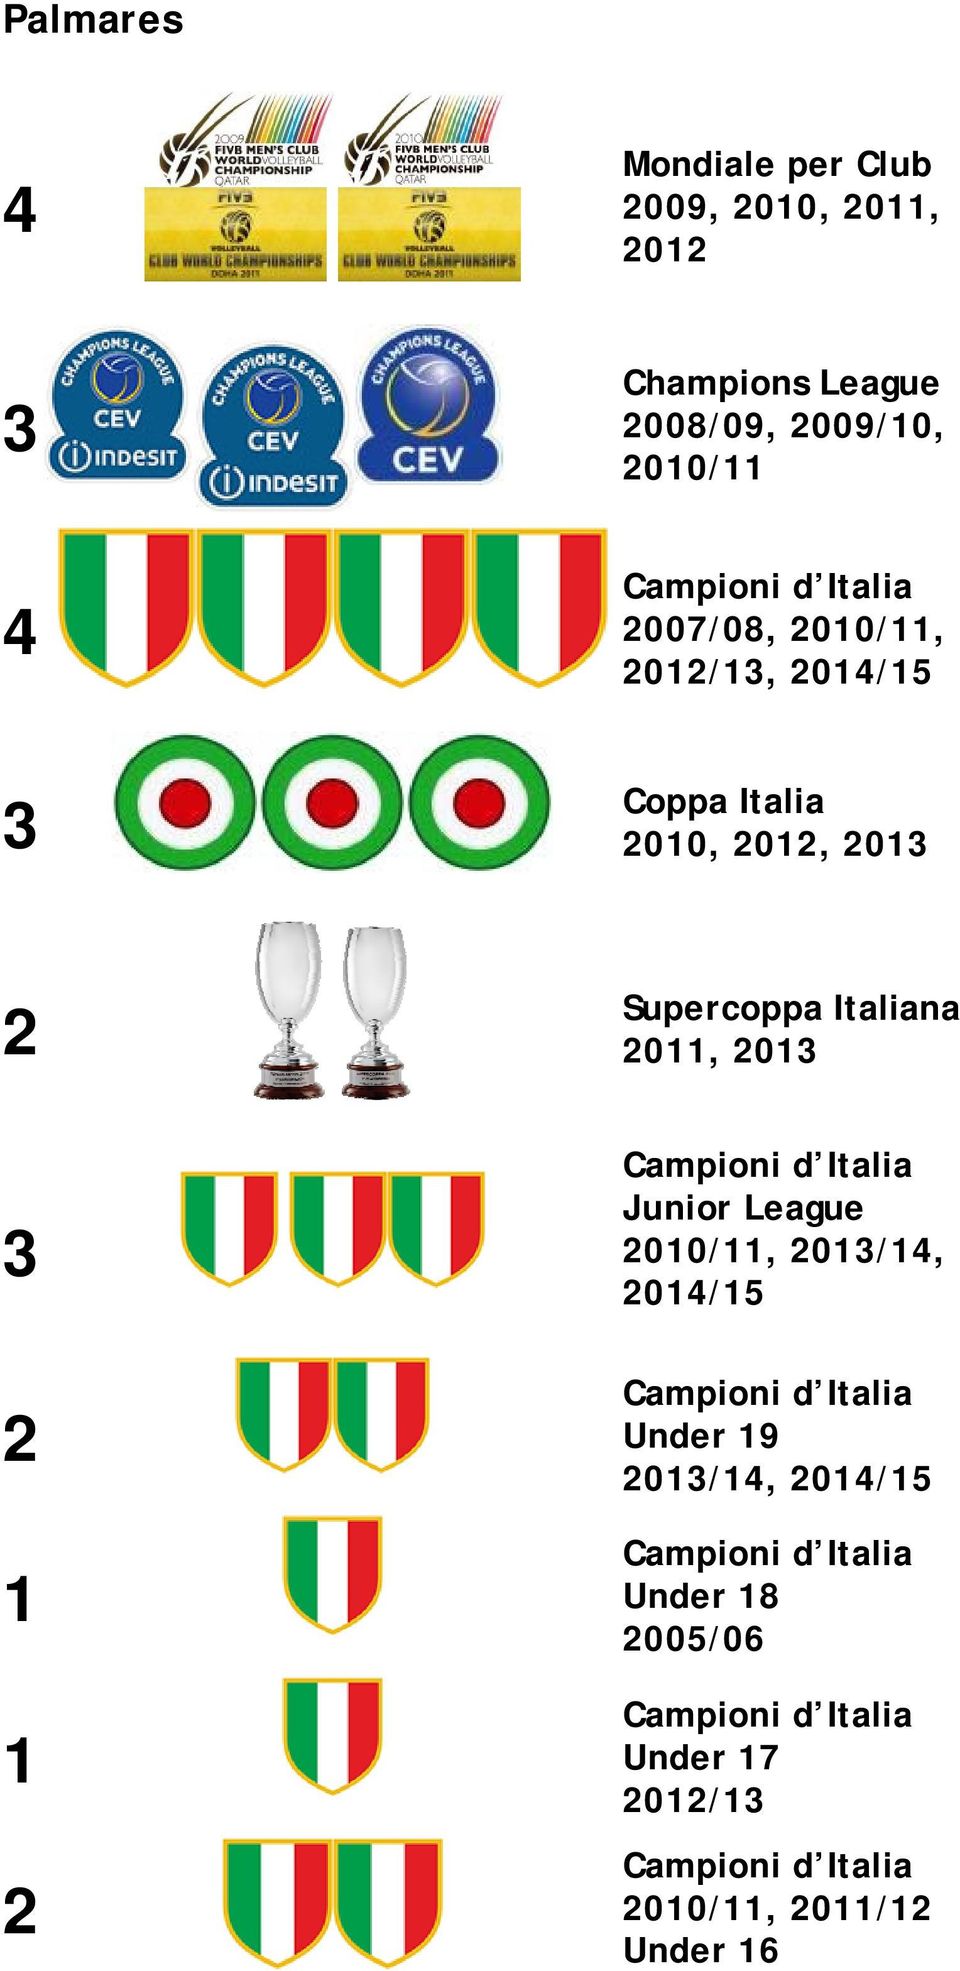 2011, 2013 Campioni d Italia Junior League 2010/11, 2013/14, 2014/15 Campioni d Italia Under 19 2013/14,